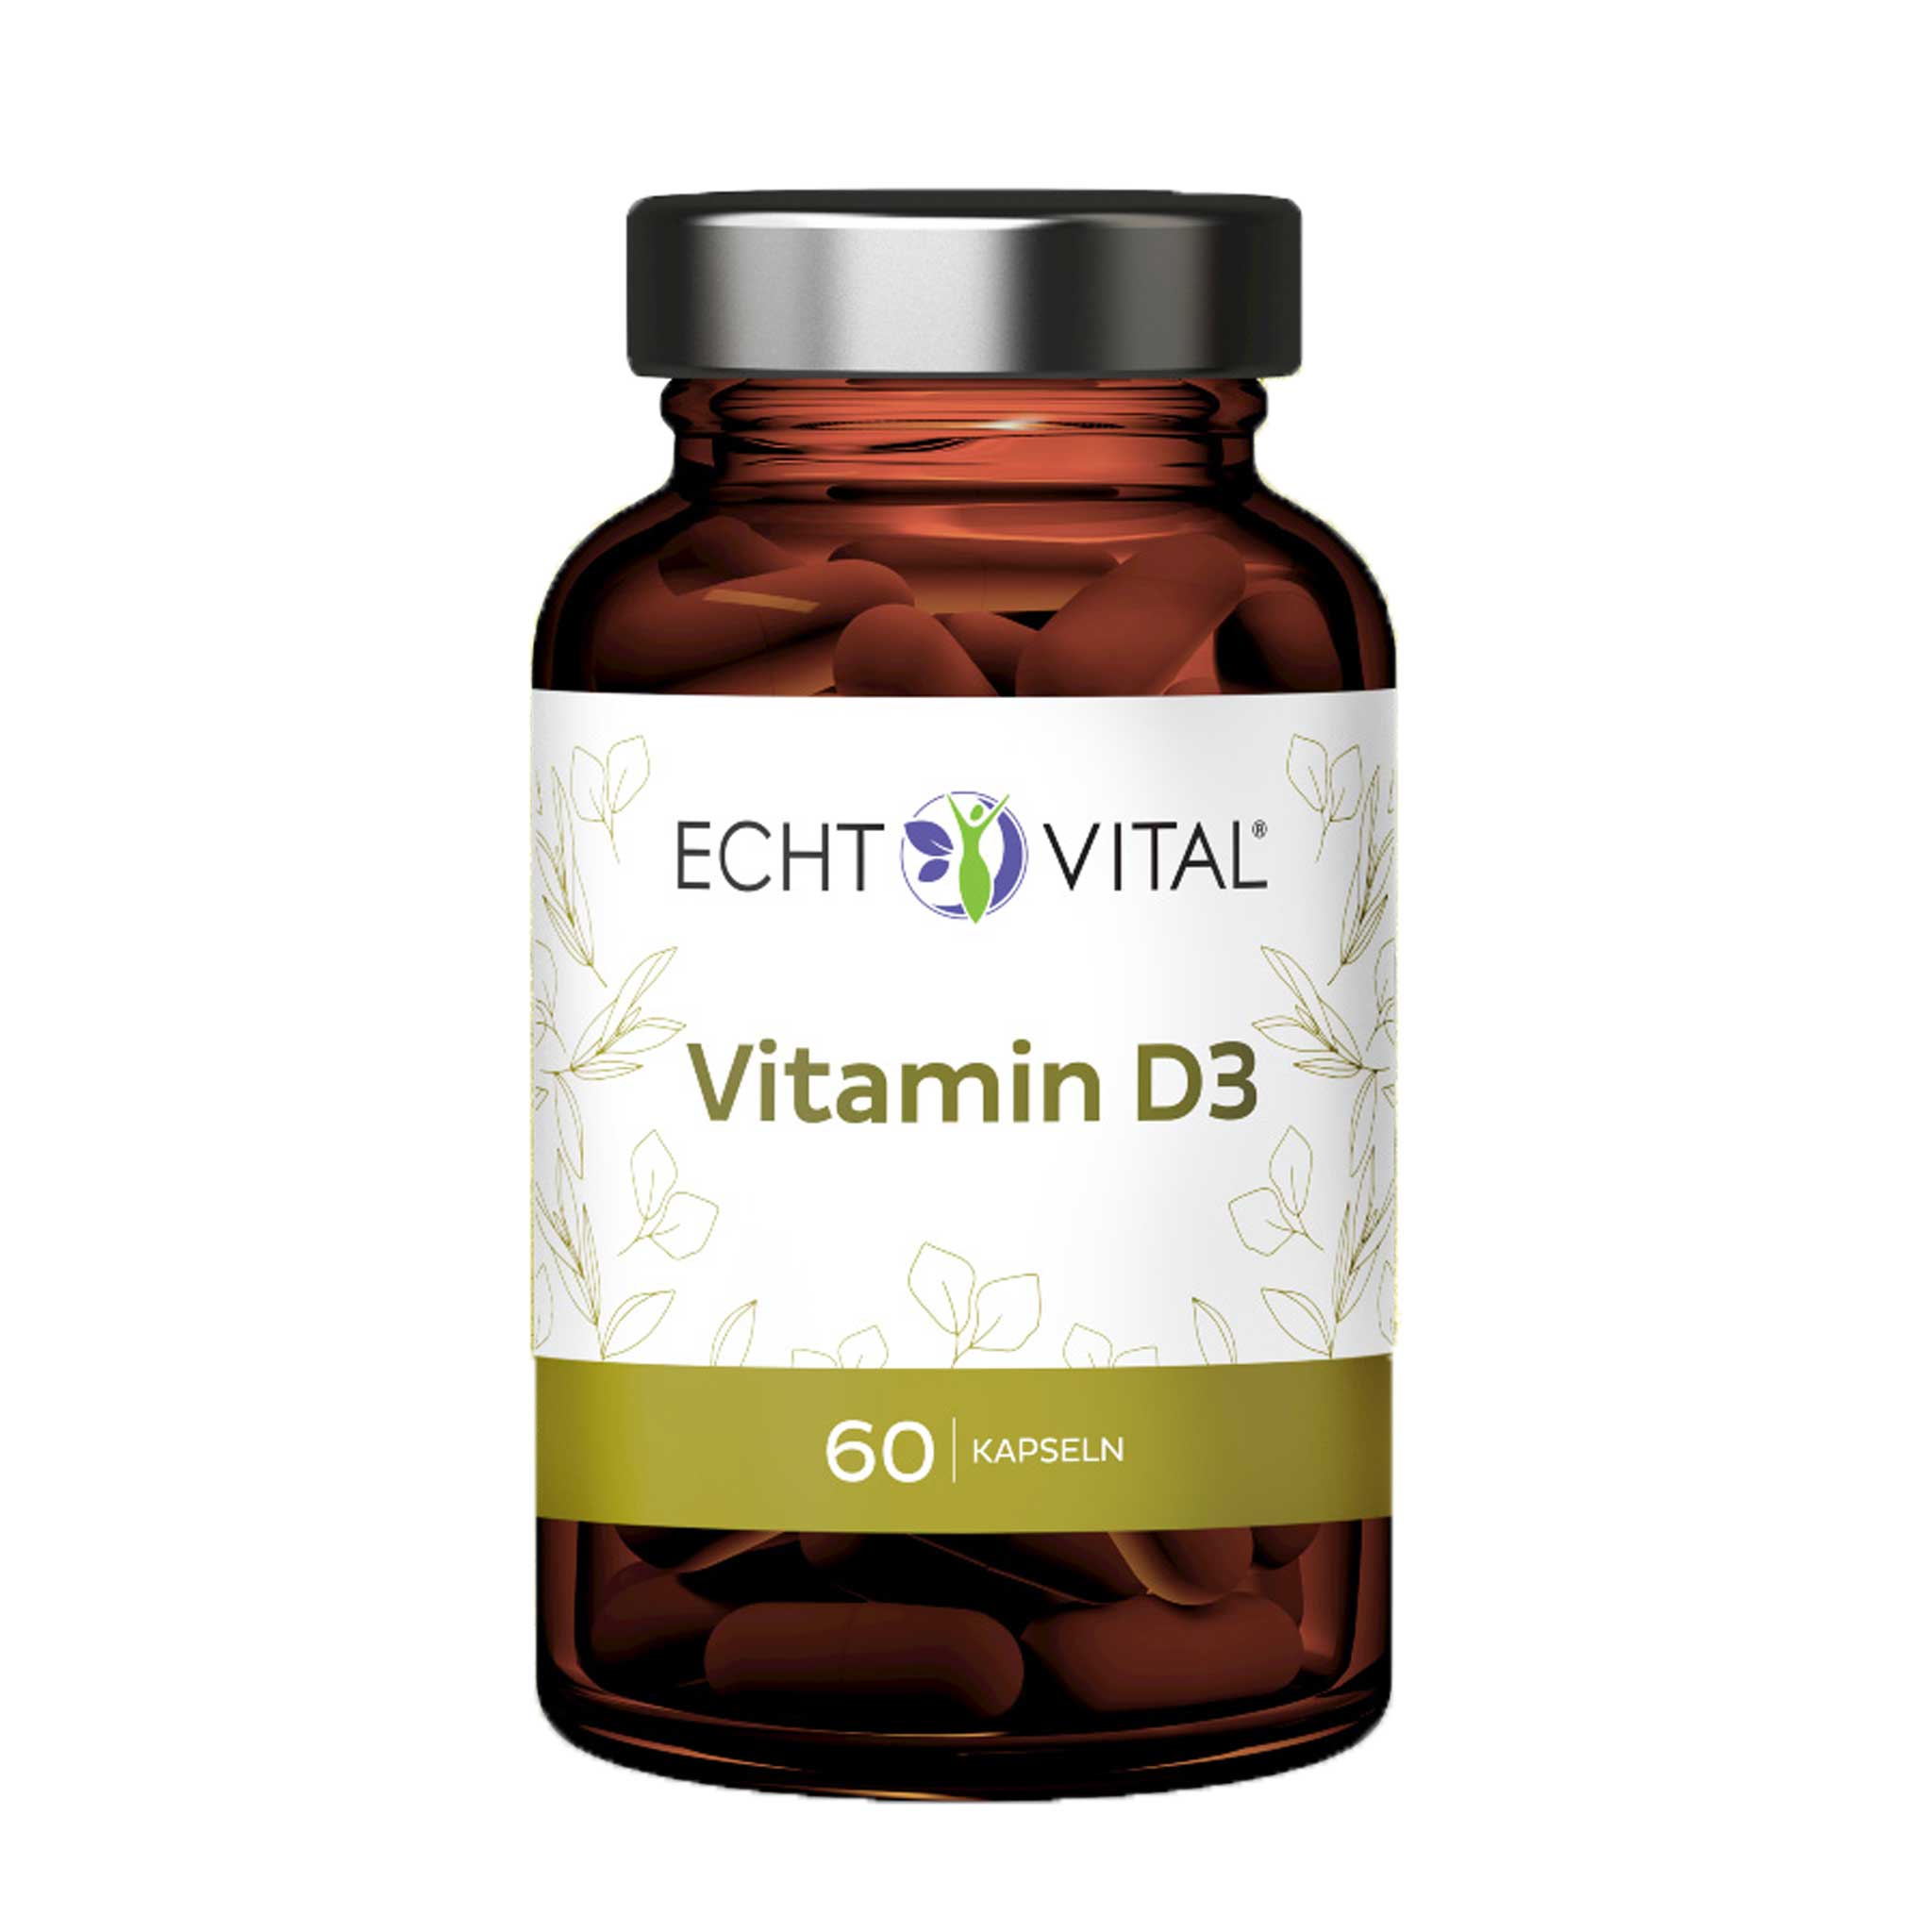 Vitamin D3 von Echt Vital beinhaltet 60 Kapseln